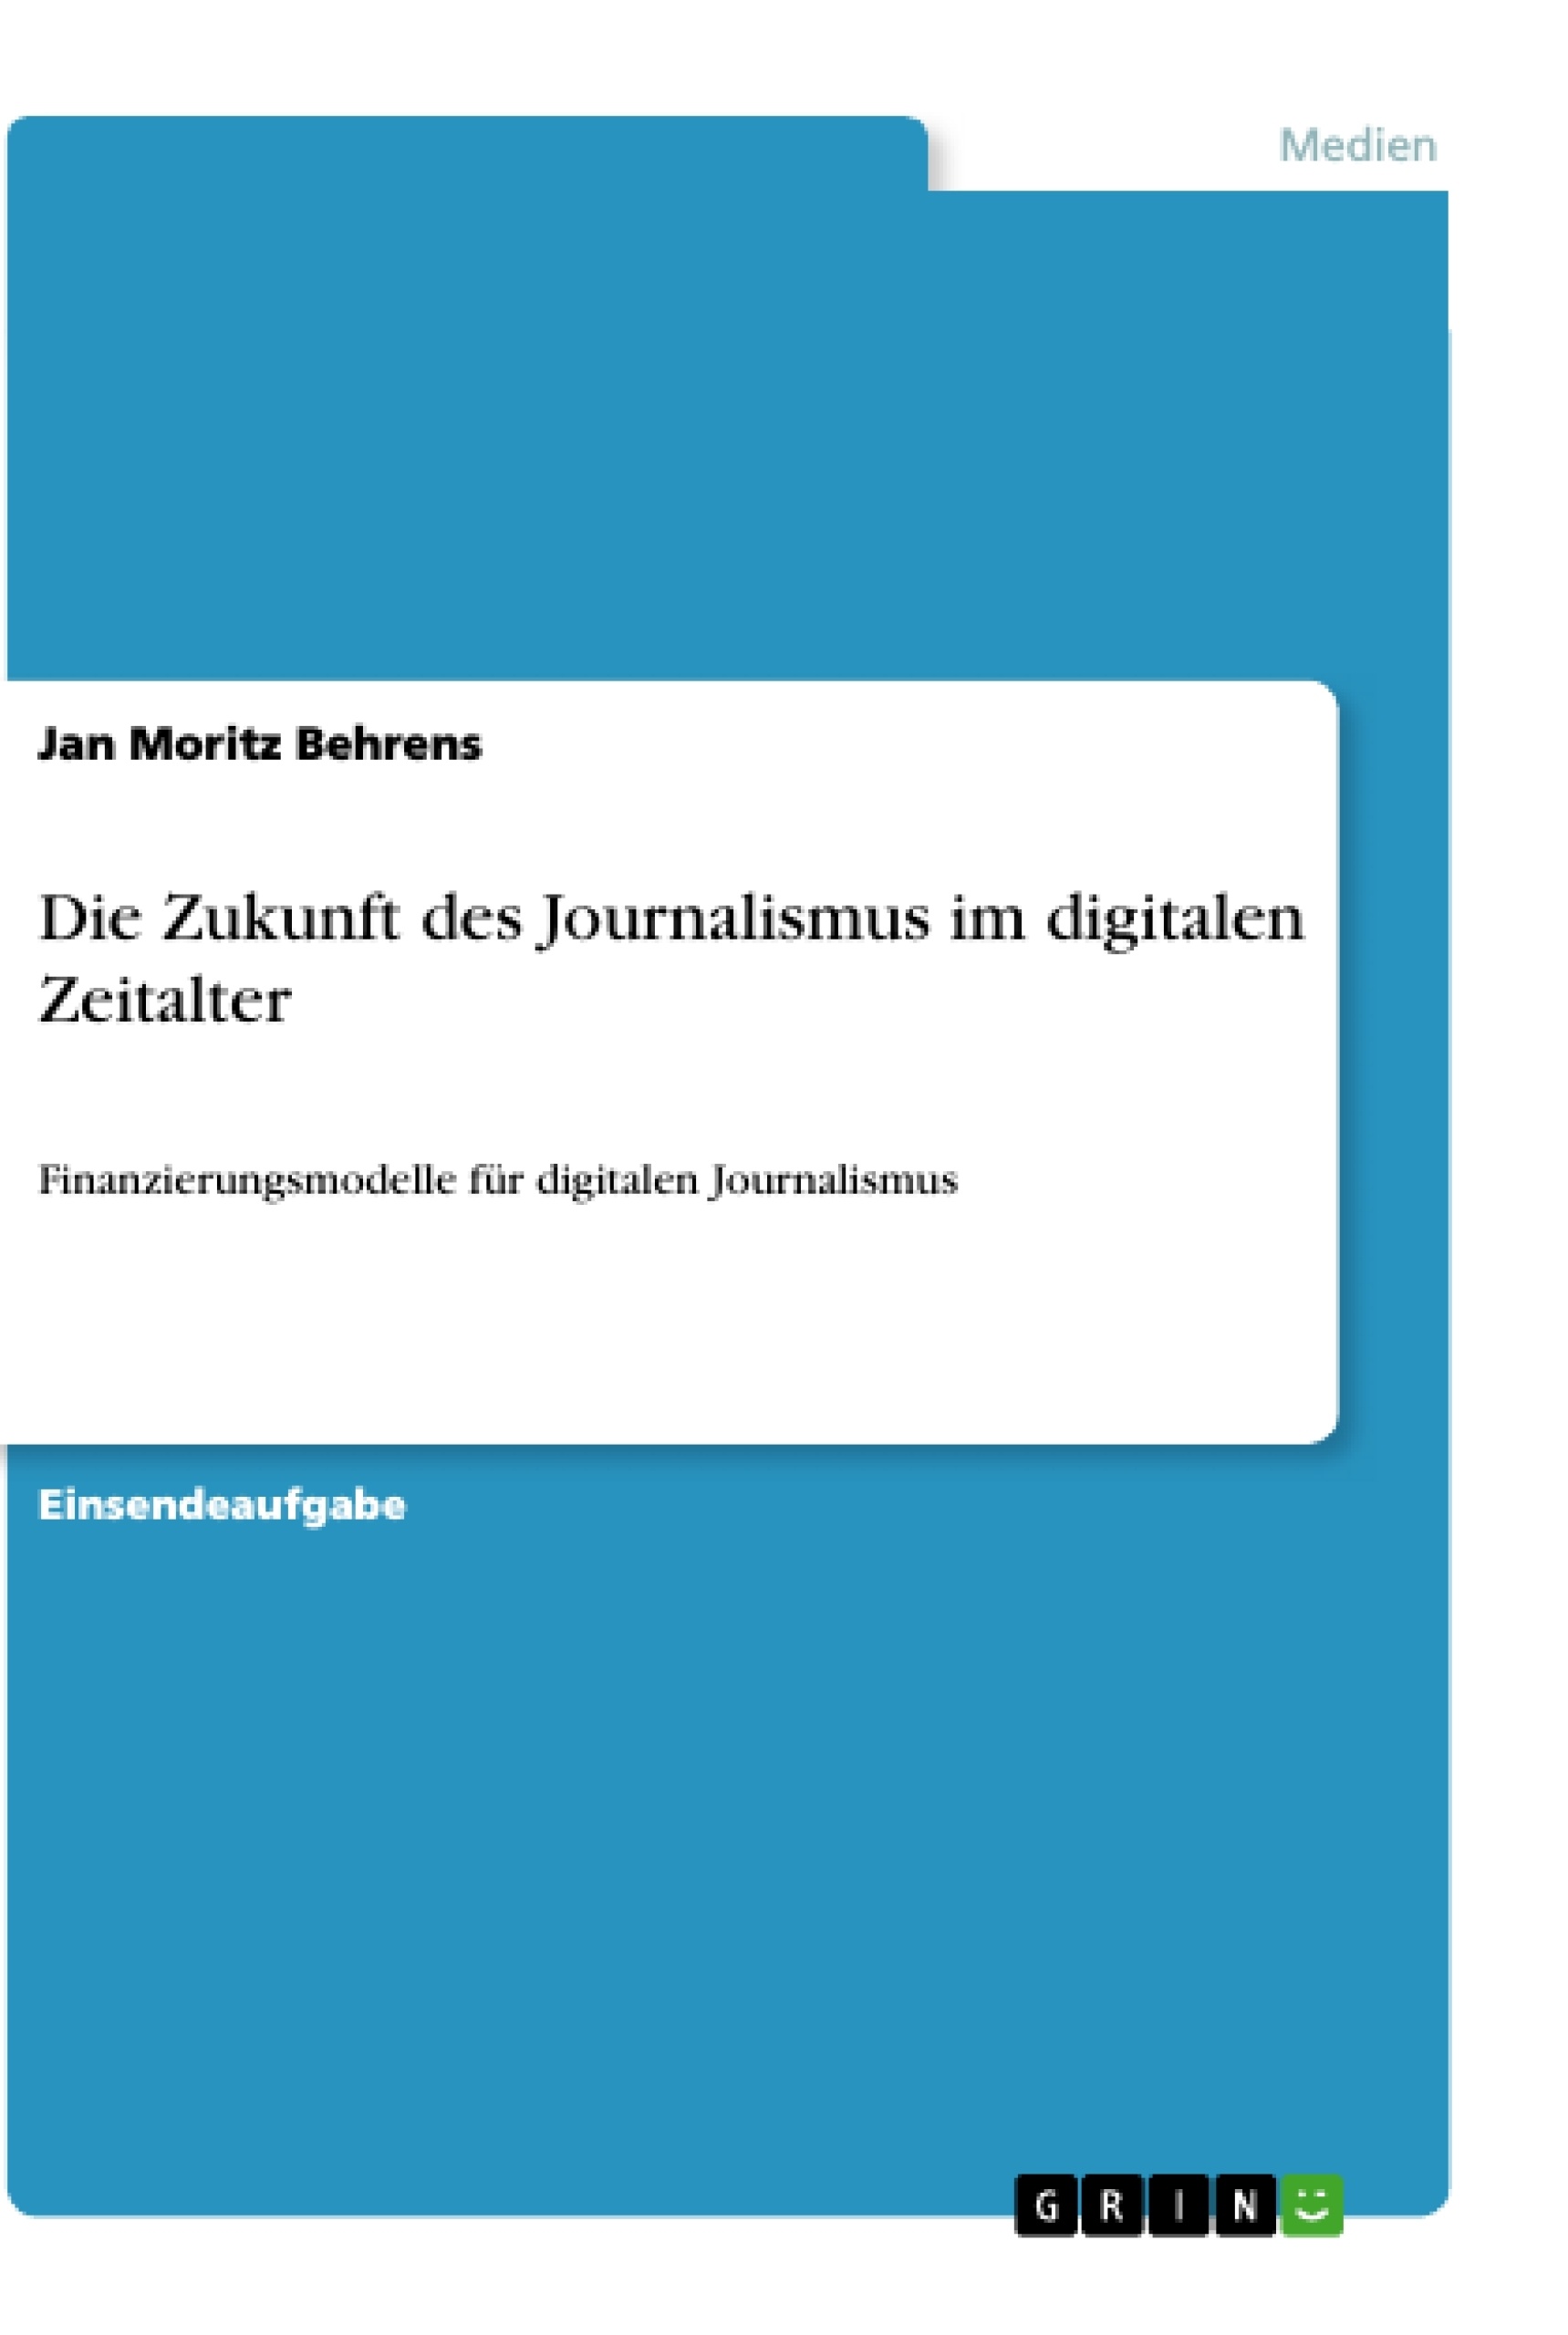 Title: Die Zukunft des Journalismus im digitalen Zeitalter